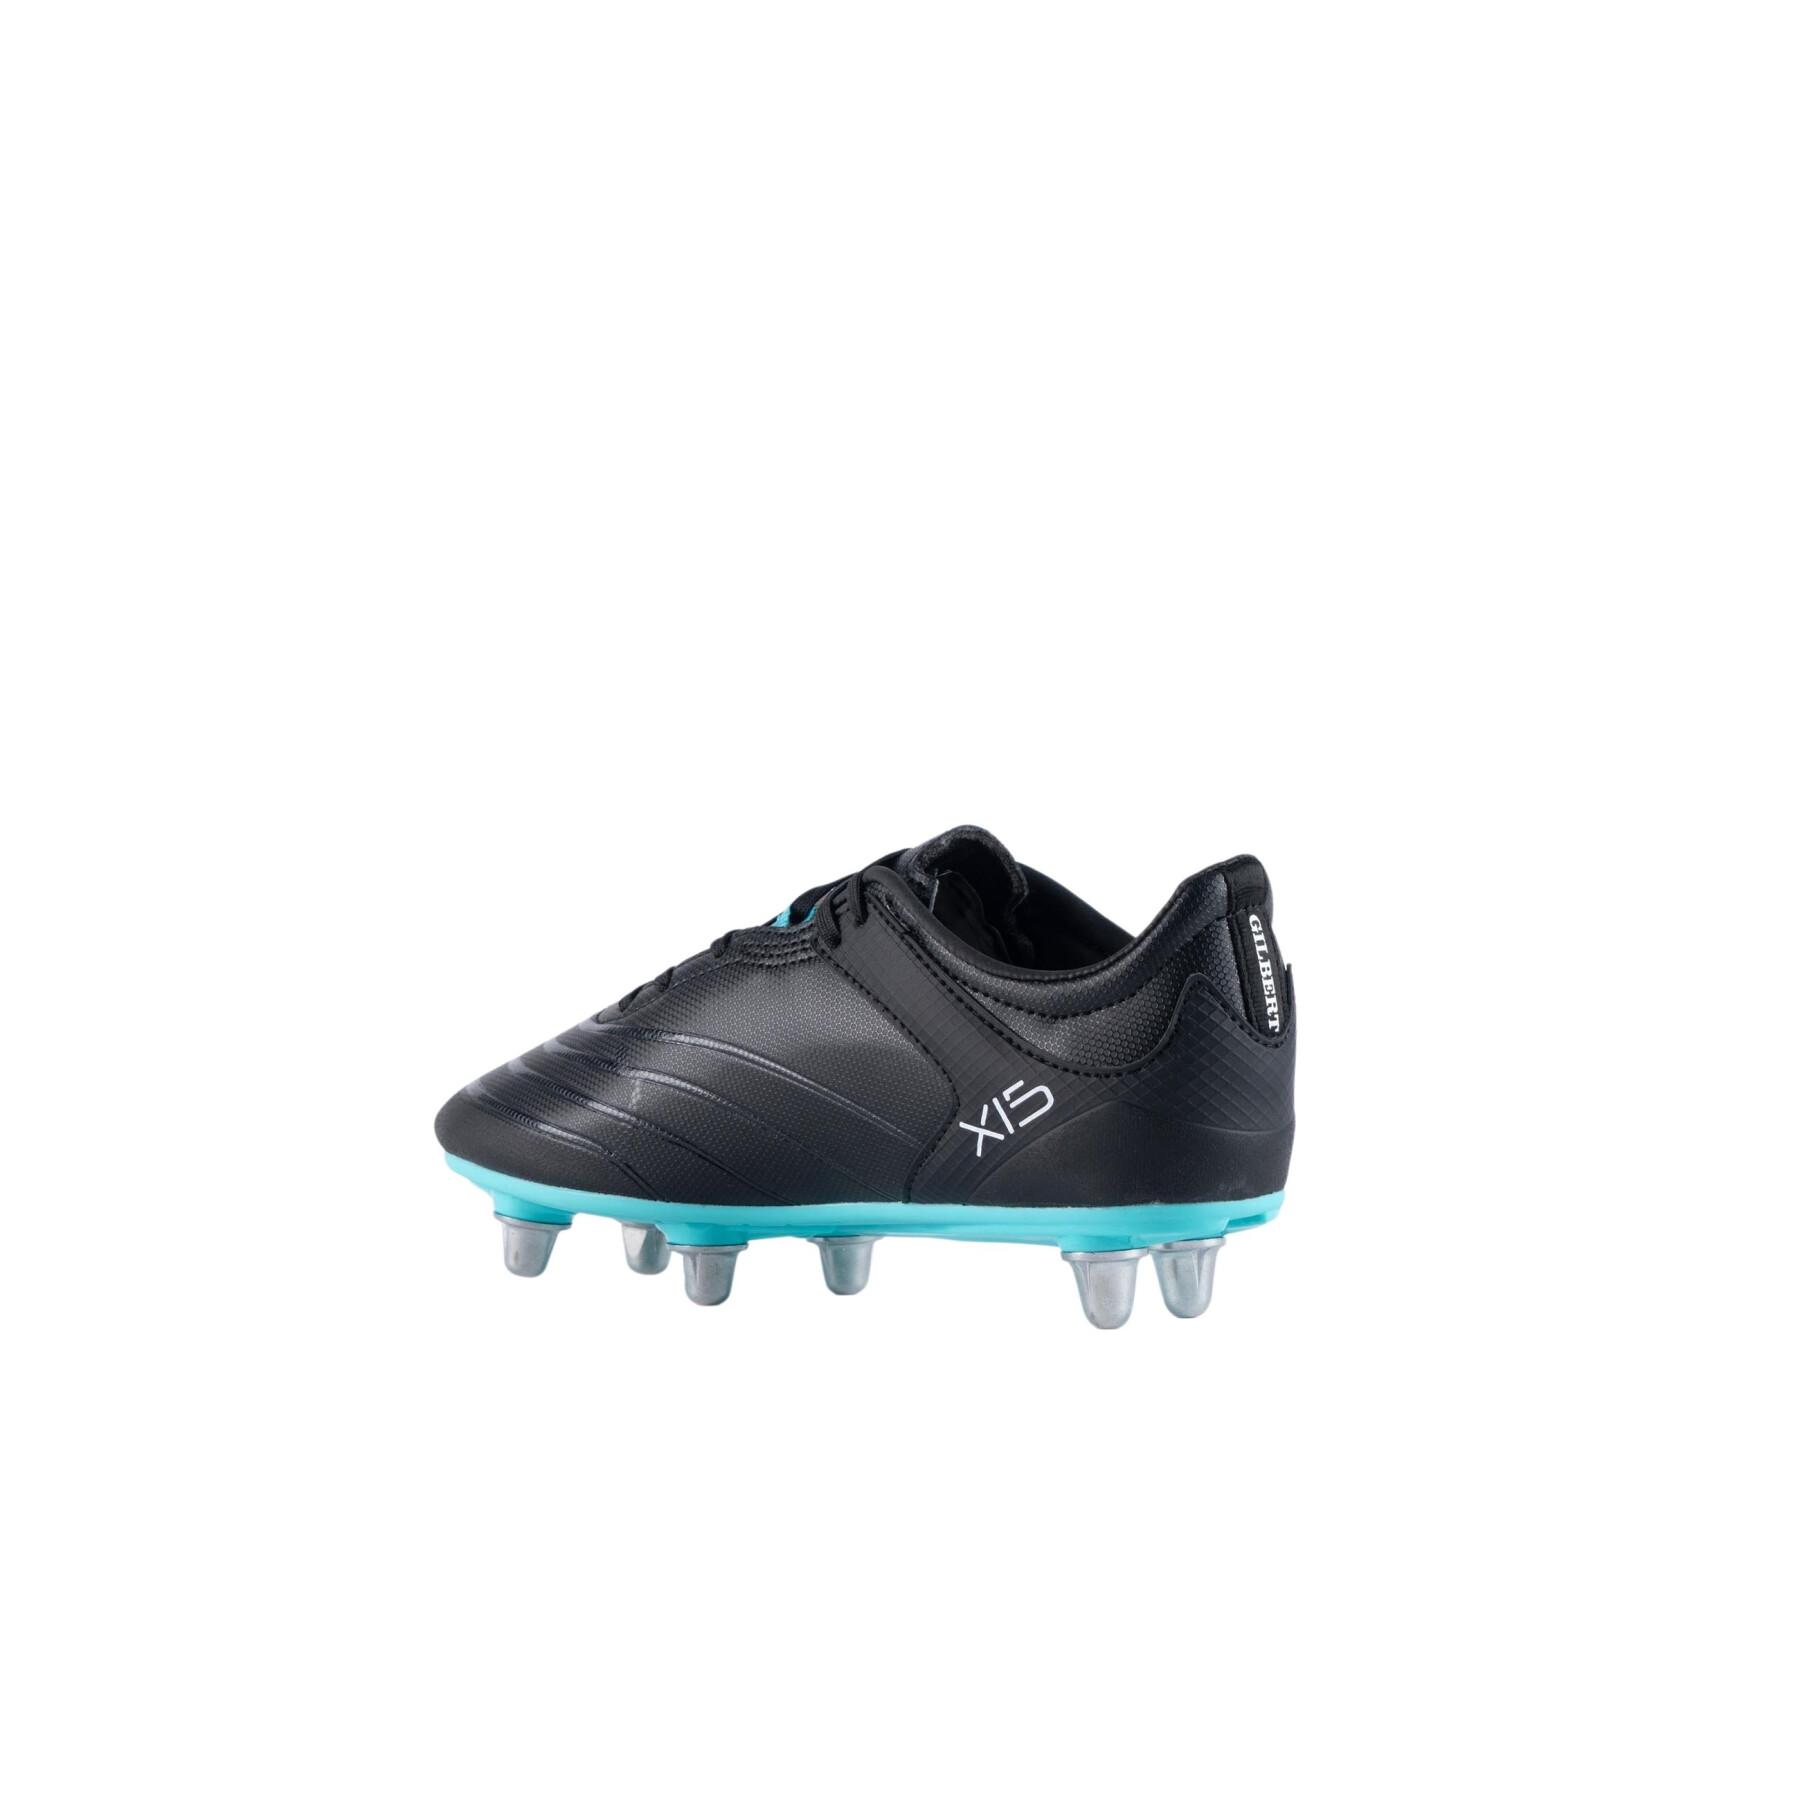 Rugby-Schuhe für Kinder Gilbert Sidestep X15 LO 6S